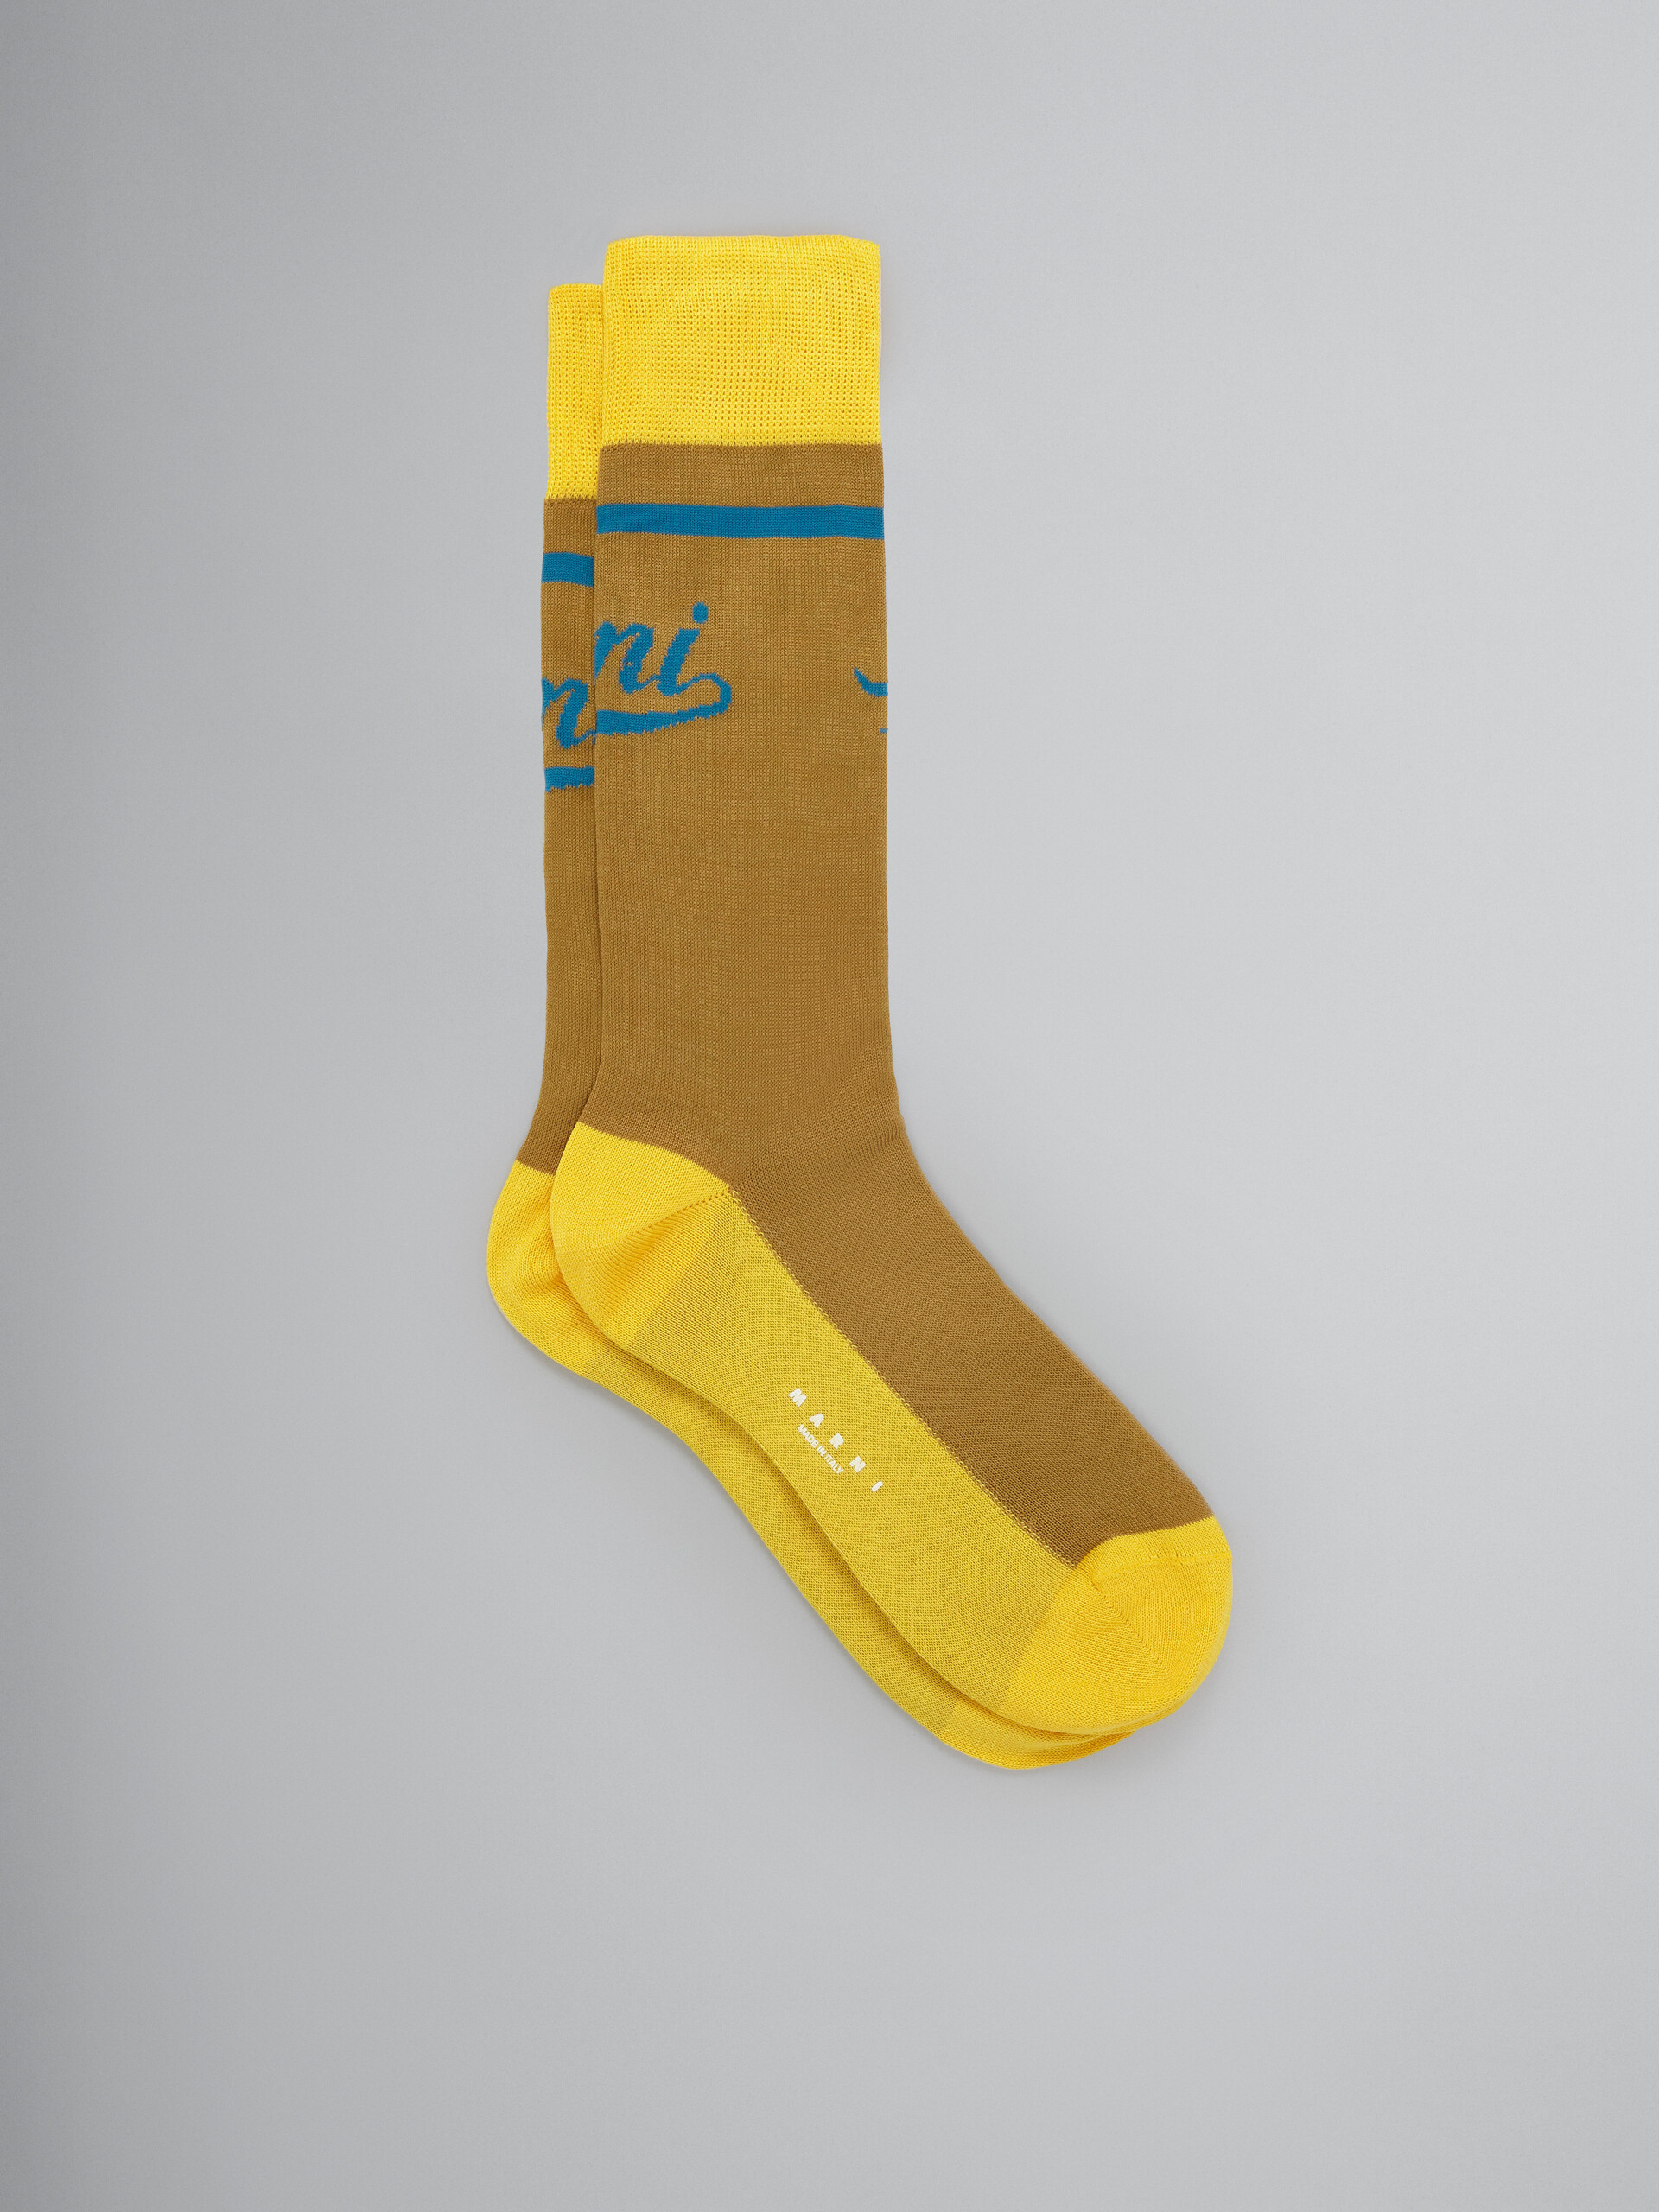 Brown and yellow socks with logo - Socks - Image 1